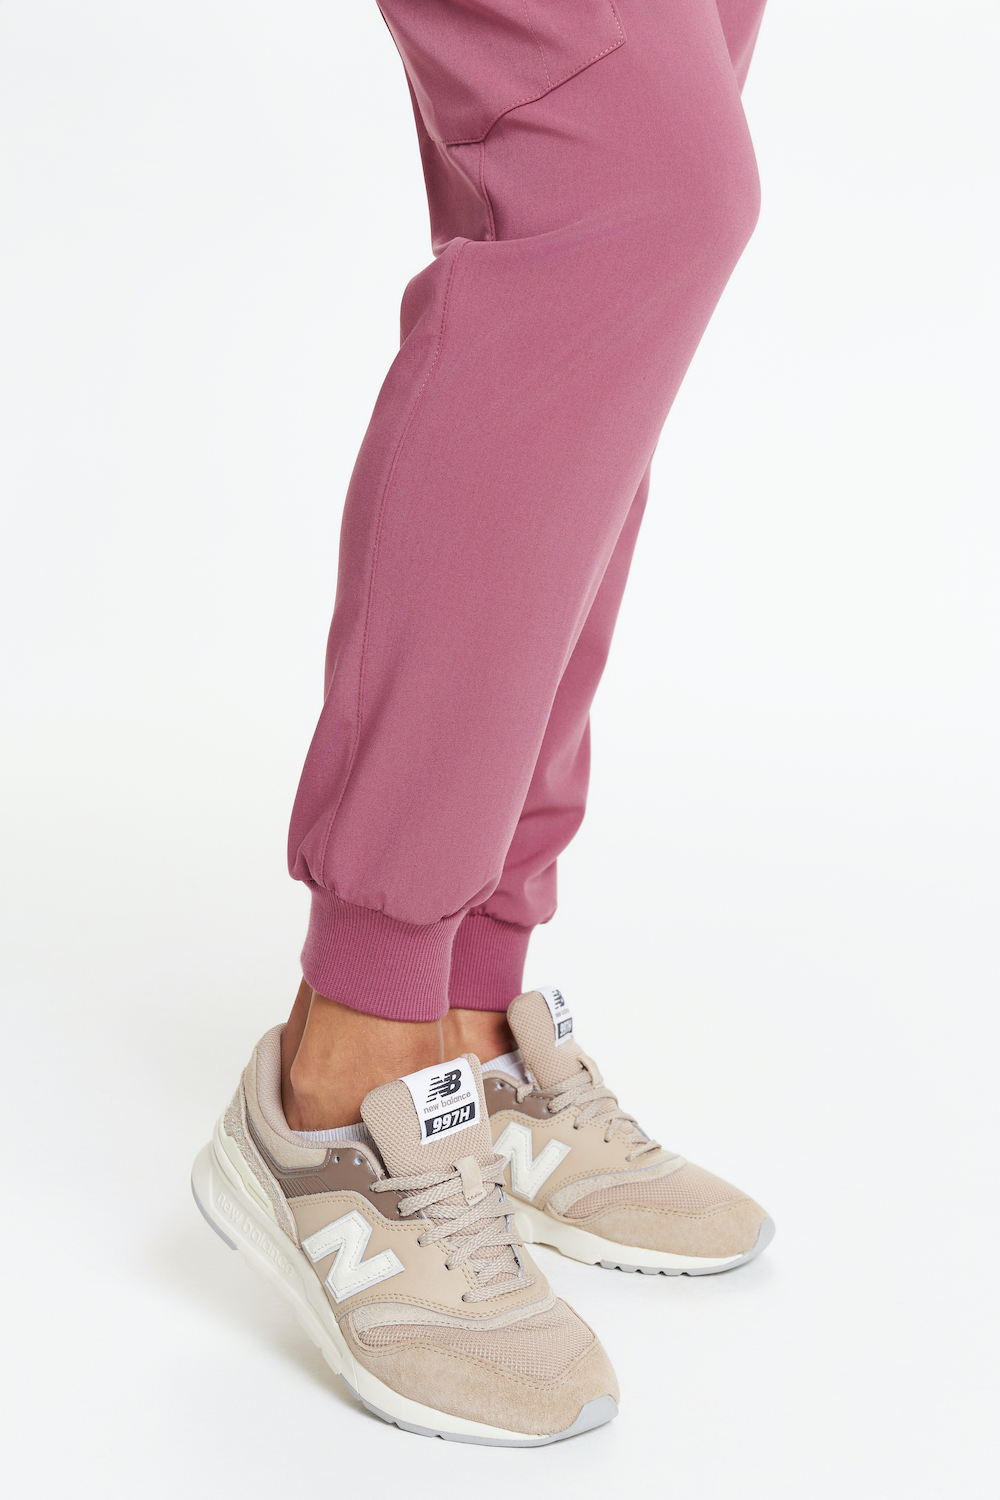 Spodnie medyczne damskie joggery scrubs w kolorze dolce rosa. MEDANDBEAUTY, kolekcja basic